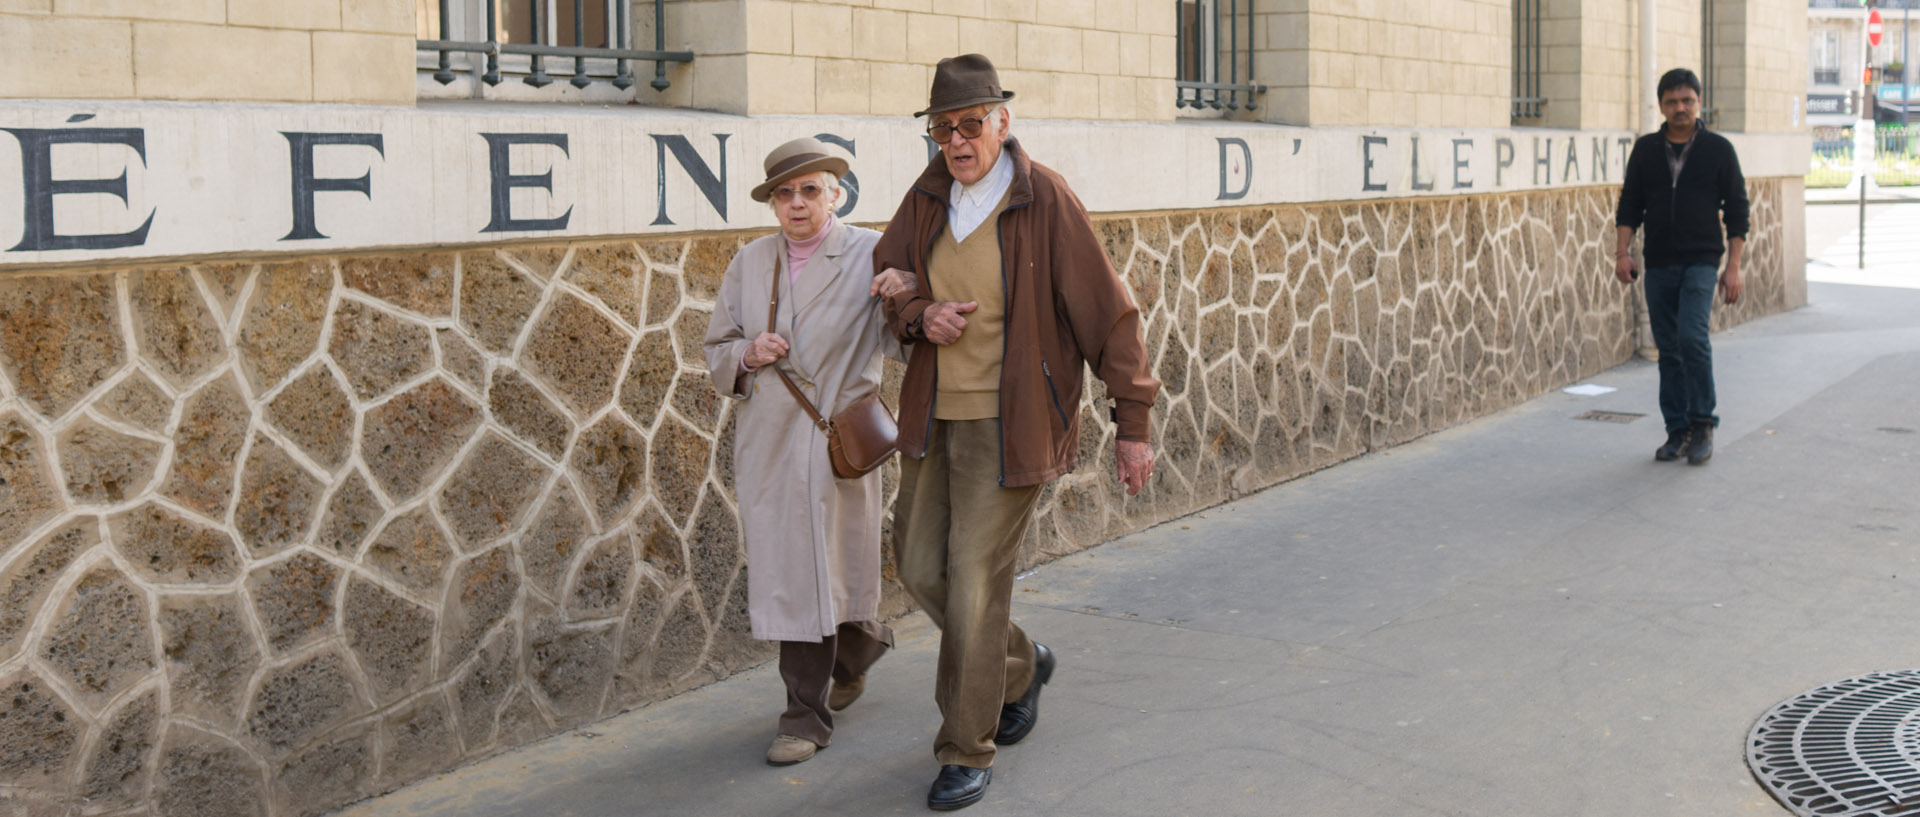 Couple âgé devant un mur indiquant "Défense d'éléphant", rue Louis-Blanc, à Paris.